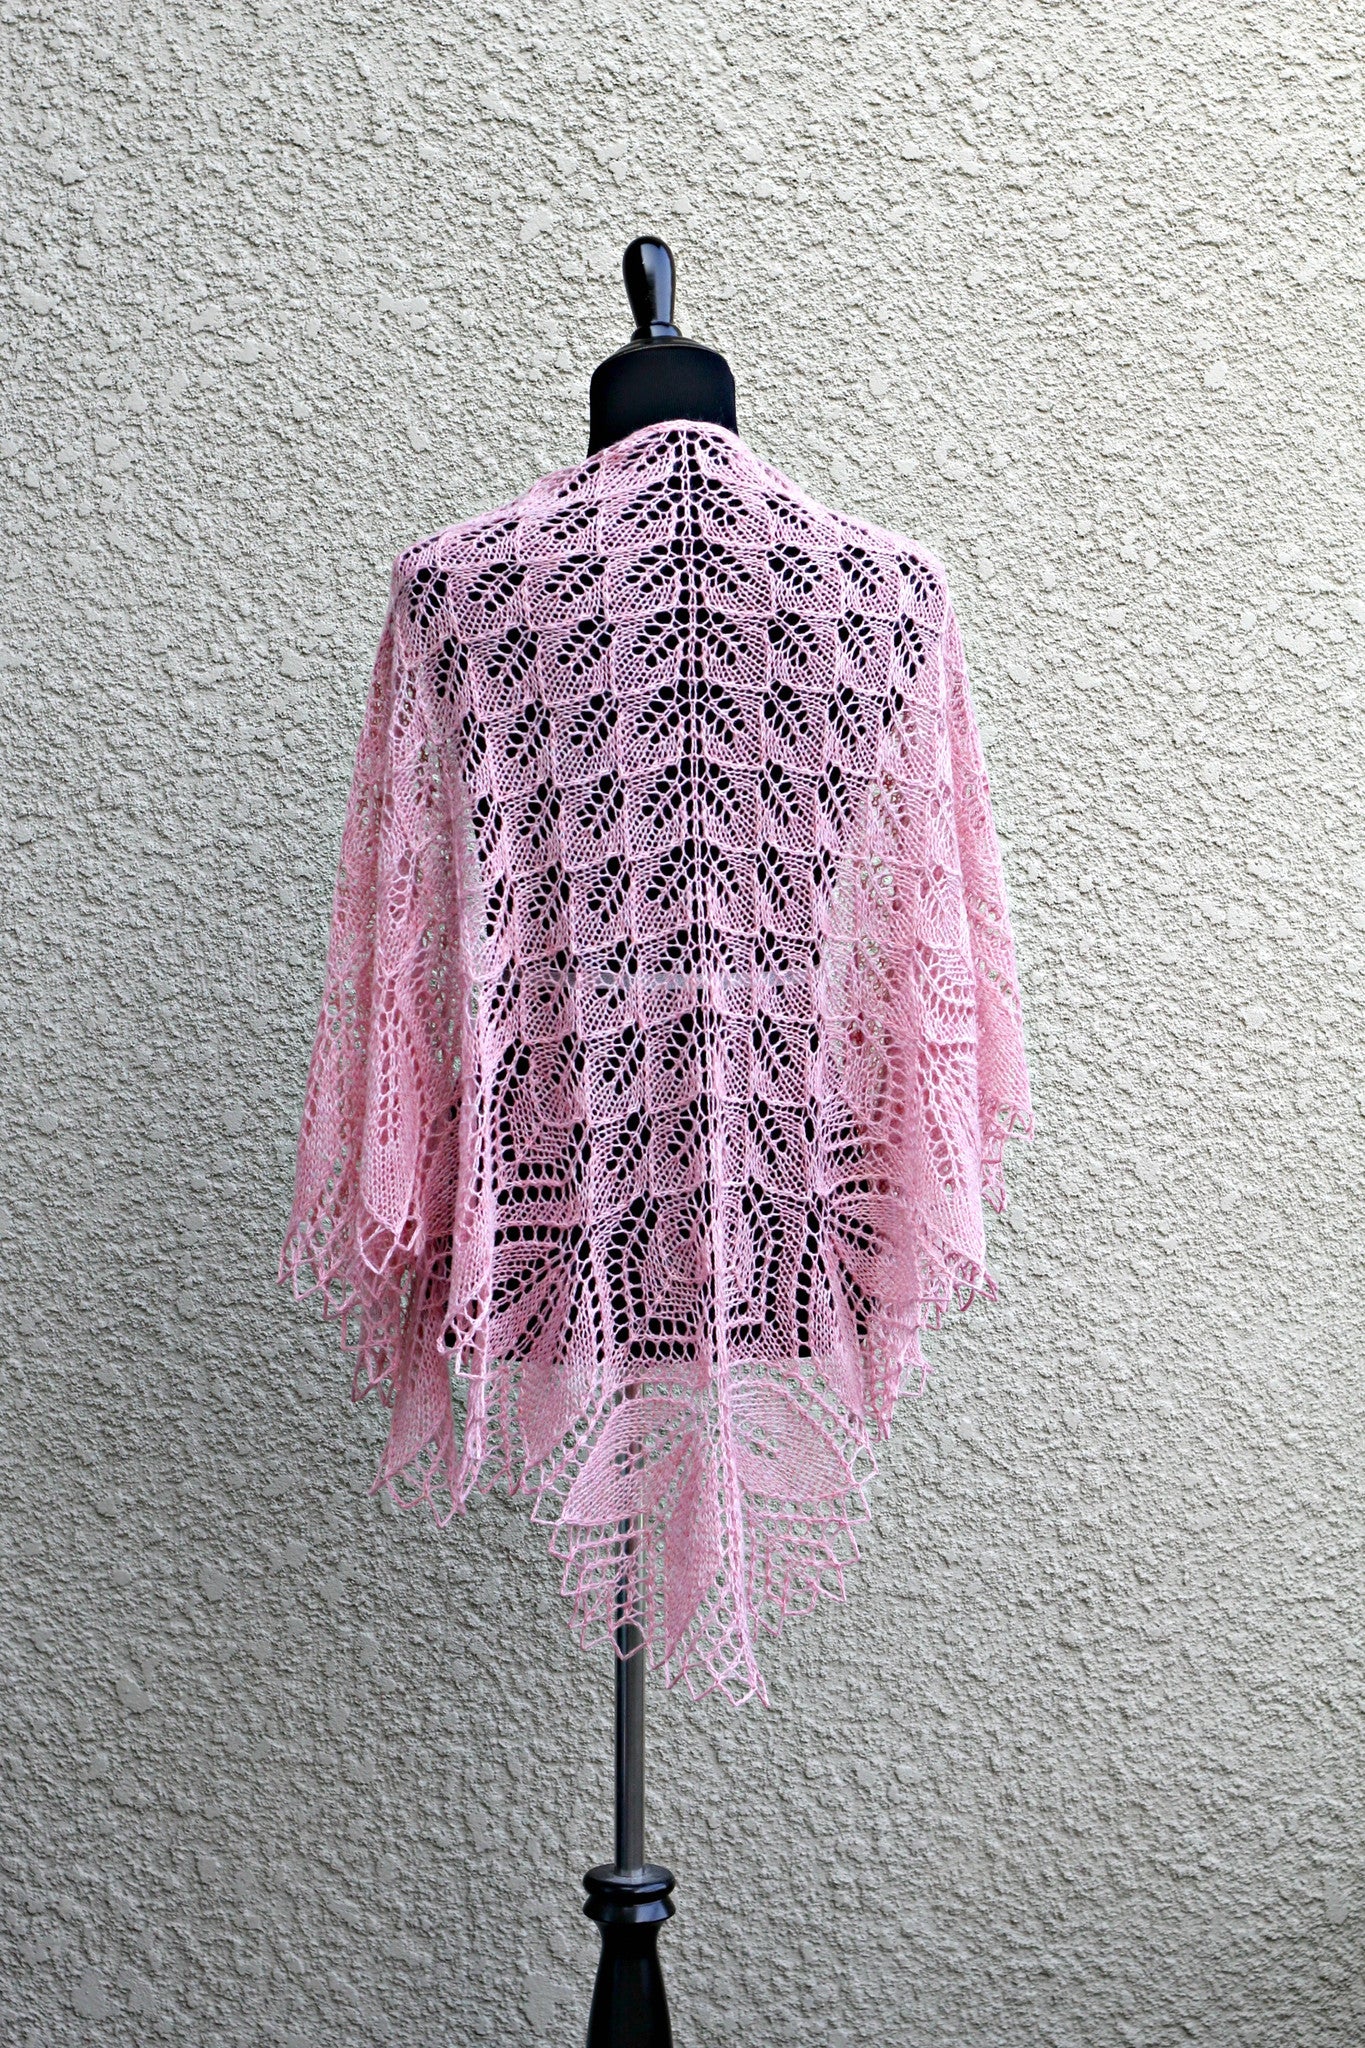 Knit lace shawl